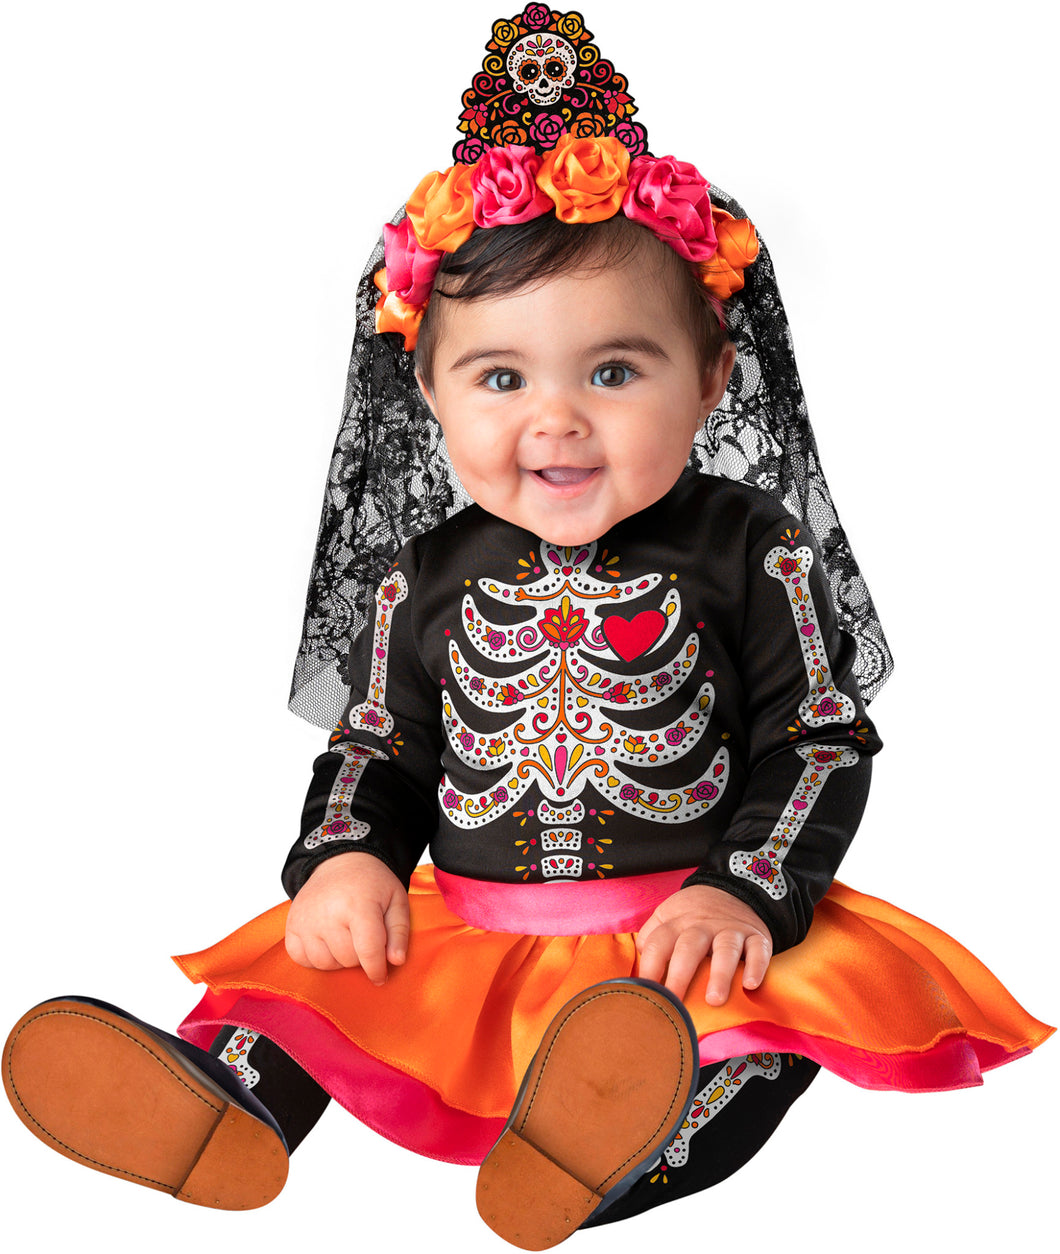 Sugar Skull Sweetie Baby Infant Child Girls Costume NEW Skeleton Dress